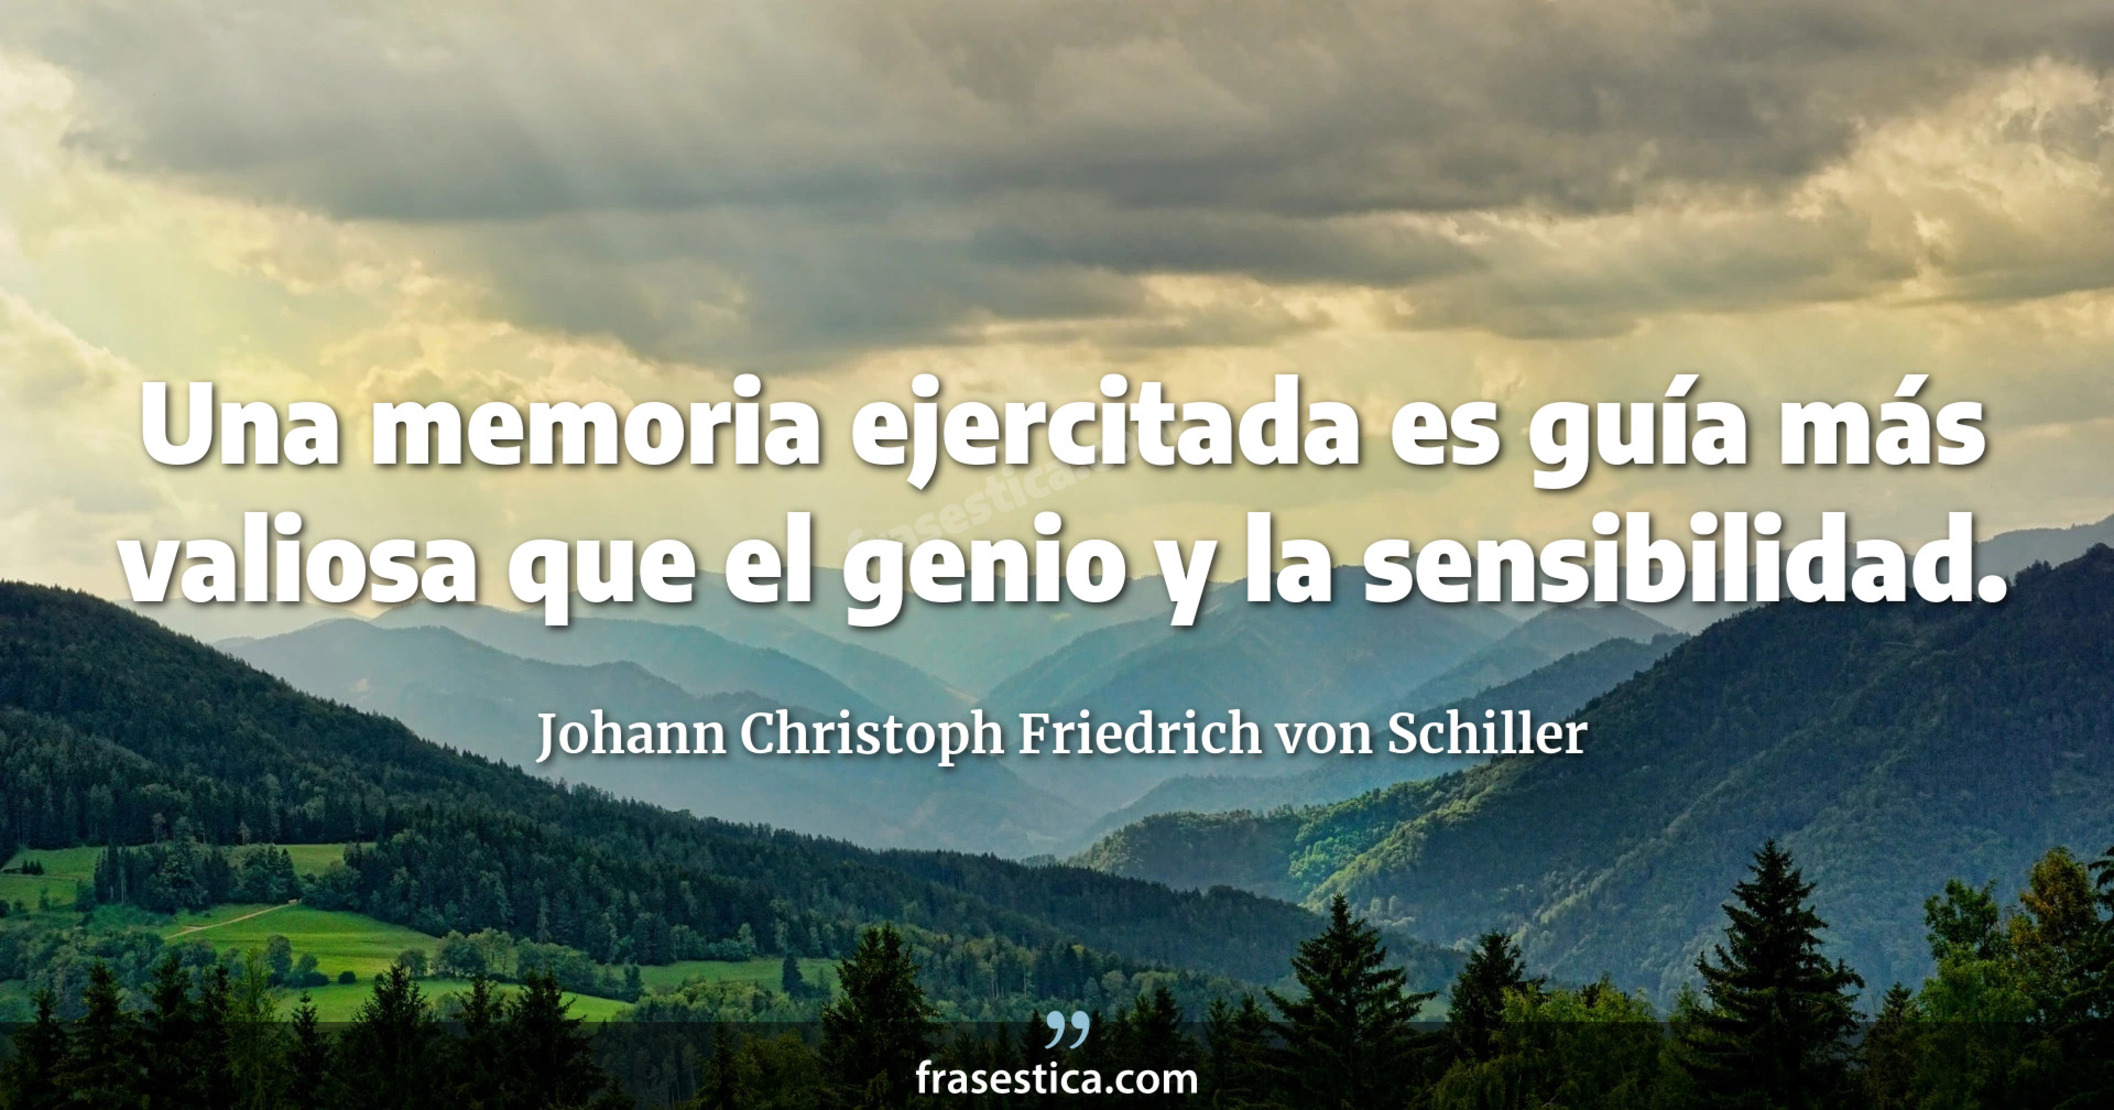 Una memoria ejercitada es guía más valiosa que el genio y la sensibilidad. - Johann Christoph Friedrich von Schiller